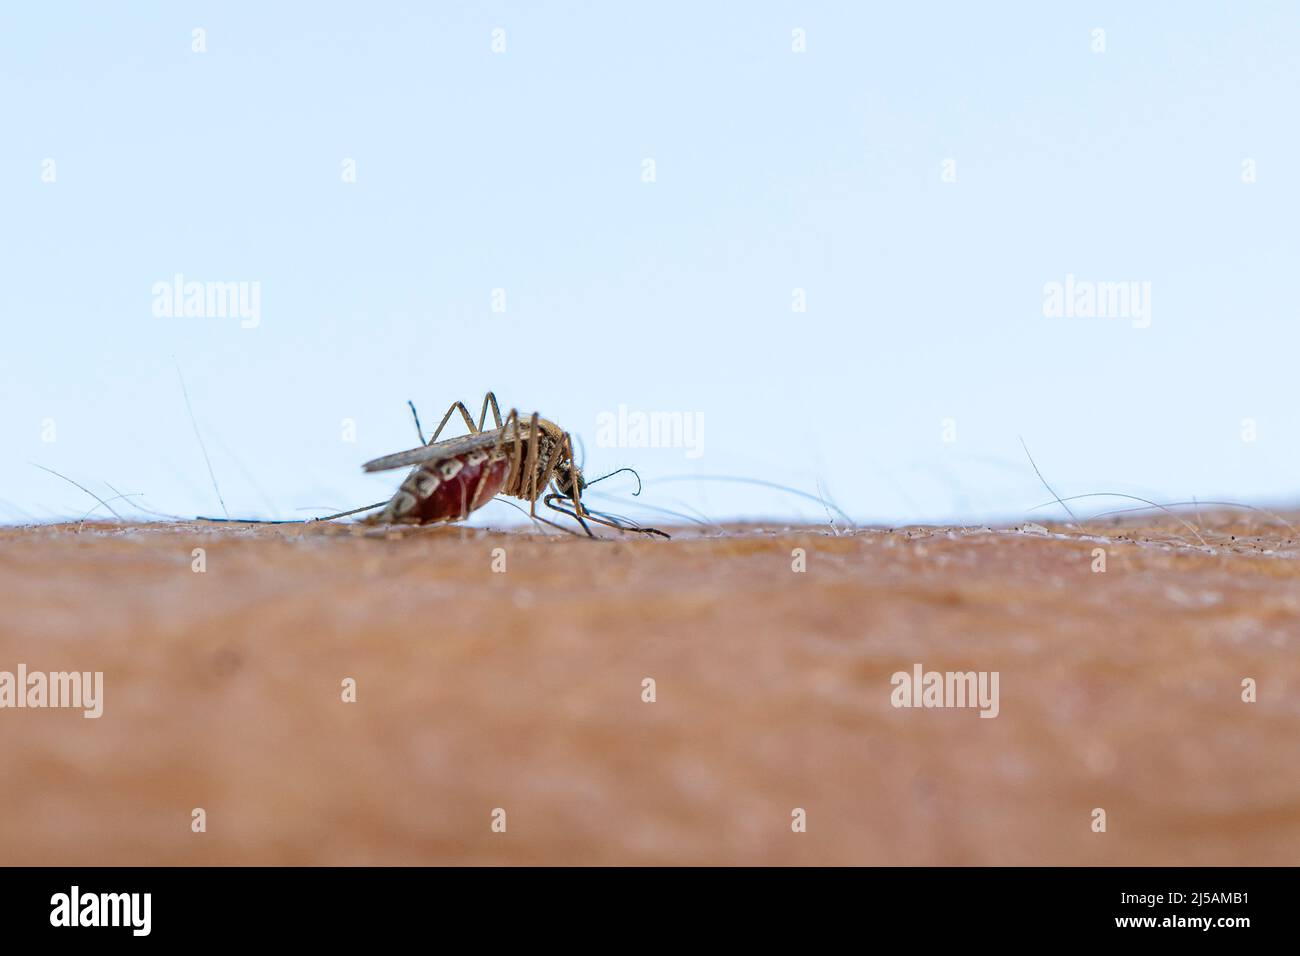 Zica-Virus aedes aegypti-Mücke. Eine Mücke saugt Blut aus einem menschlichen Körper. Makrofoto einer Mücke am Arm Stockfoto